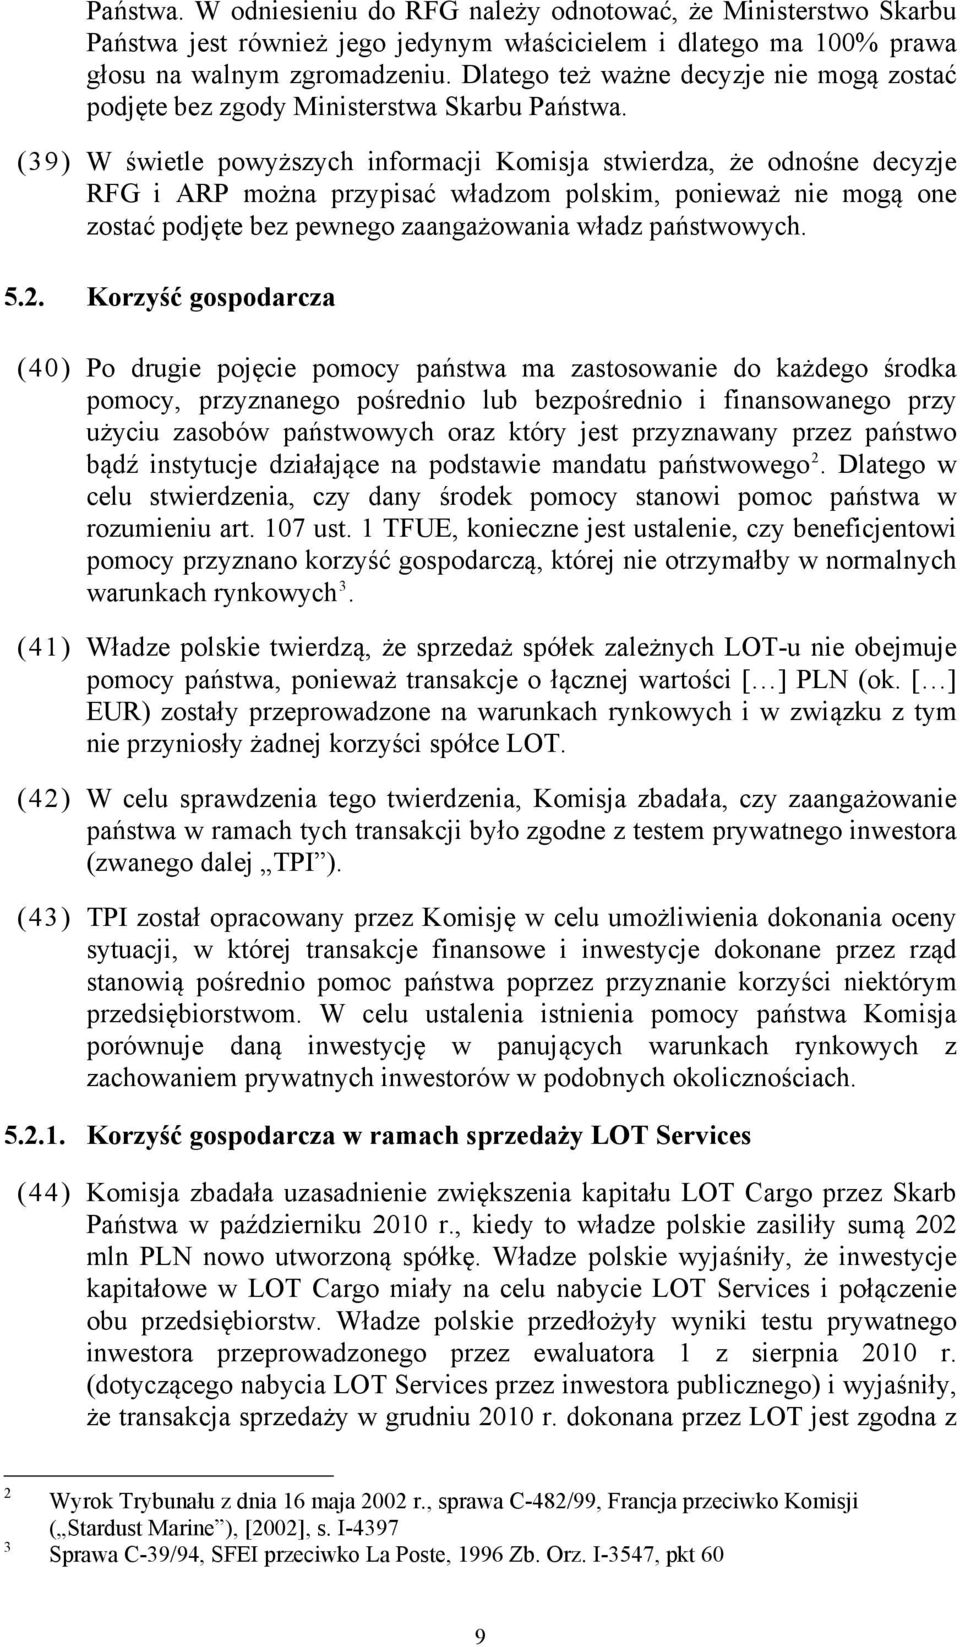 (39) W świetle powyższych informacji Komisja stwierdza, że odnośne decyzje RFG i ARP można przypisać władzom polskim, ponieważ nie mogą one zostać podjęte bez pewnego zaangażowania władz państwowych.